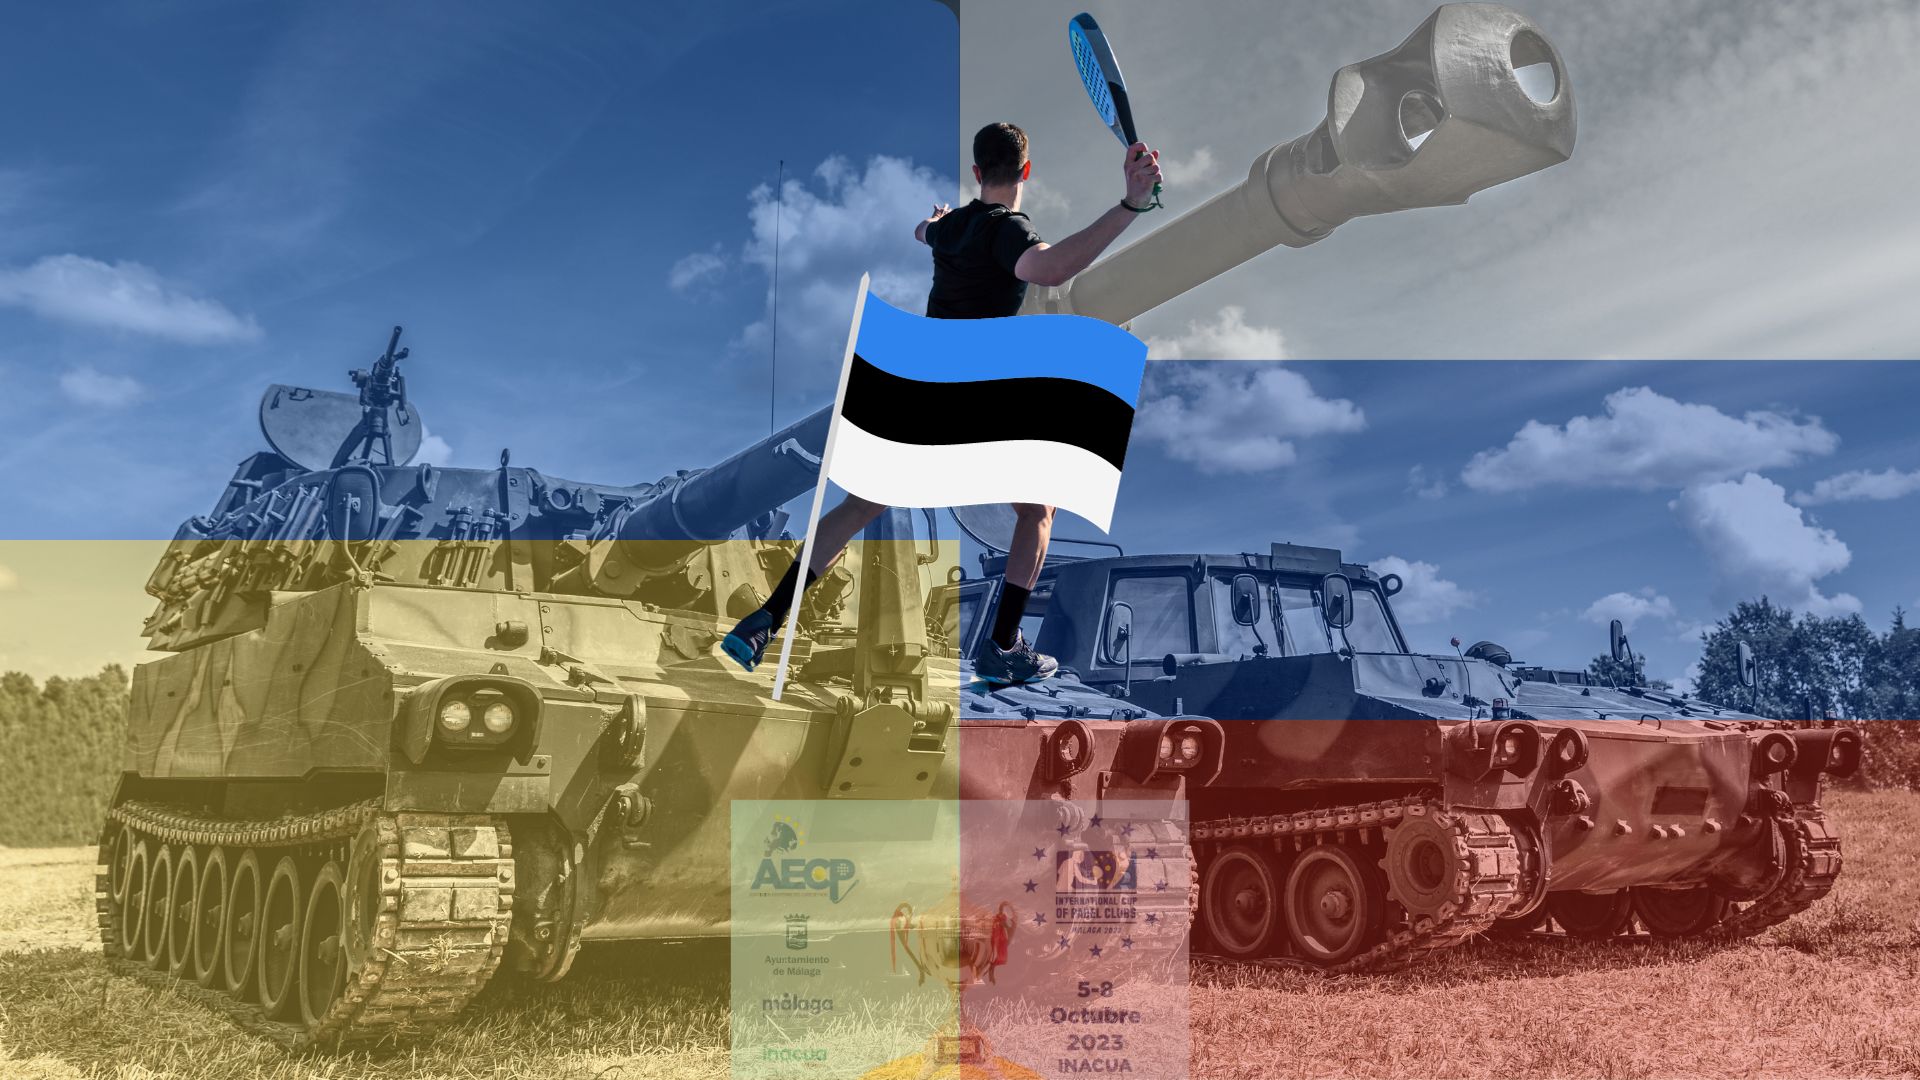 Estònia padel guerre